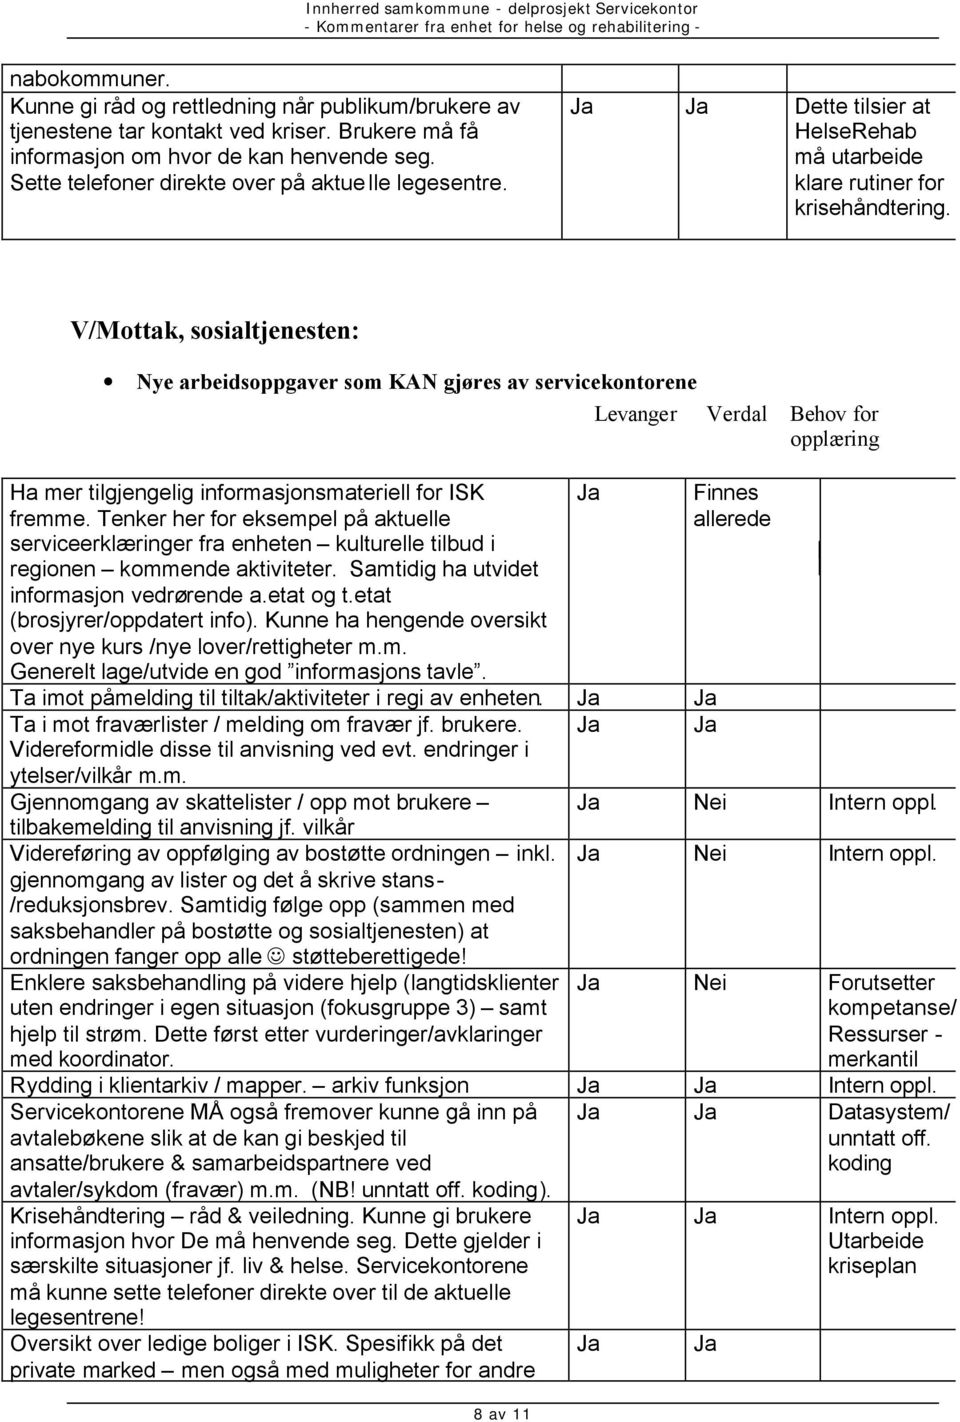 V/Mottak, sosialtjenesten: Nye arbeidsoppgaver som KAN gjøres av servicekontorene Levanger Verdal Behov for opplæring Ha mer tilgjengelig informasjonsmateriell for ISK fremme.